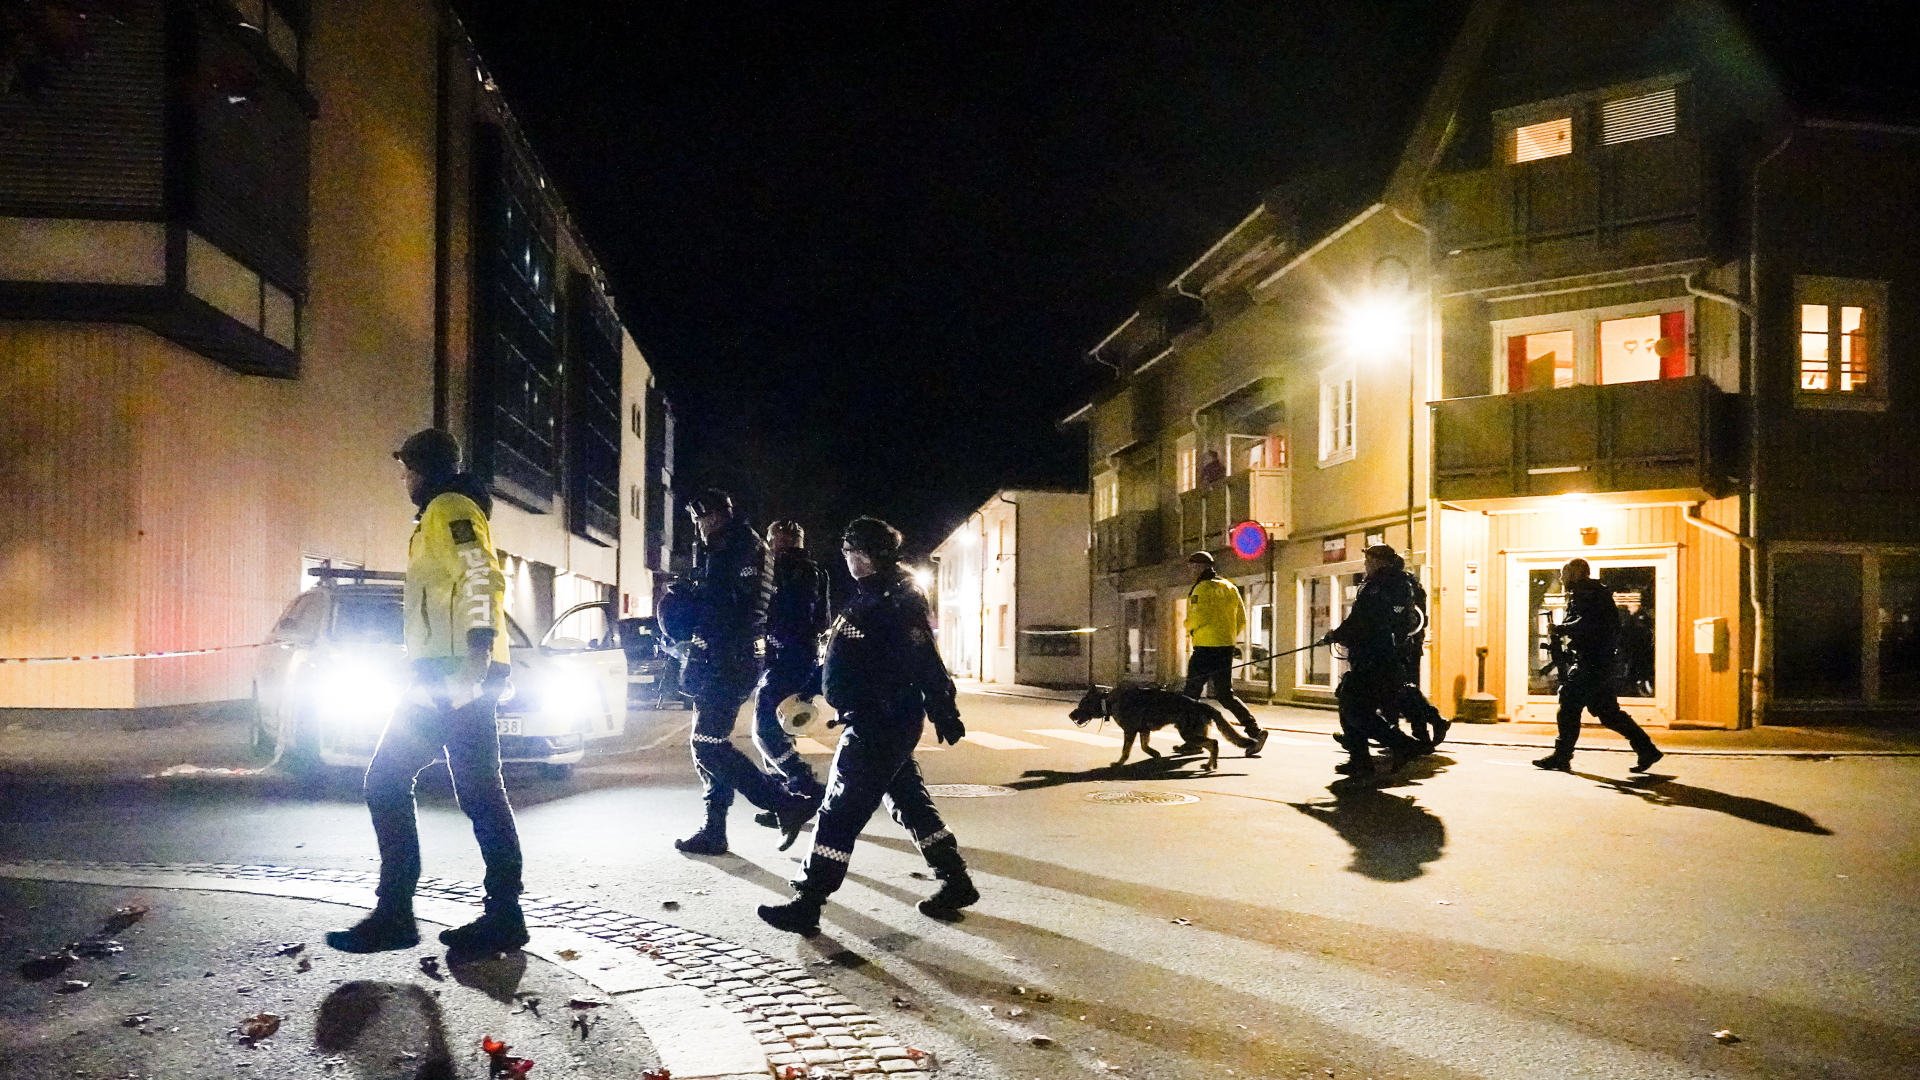 Polizisten auf Spurensuche nach Gewalttat in Kongsberg | EPA